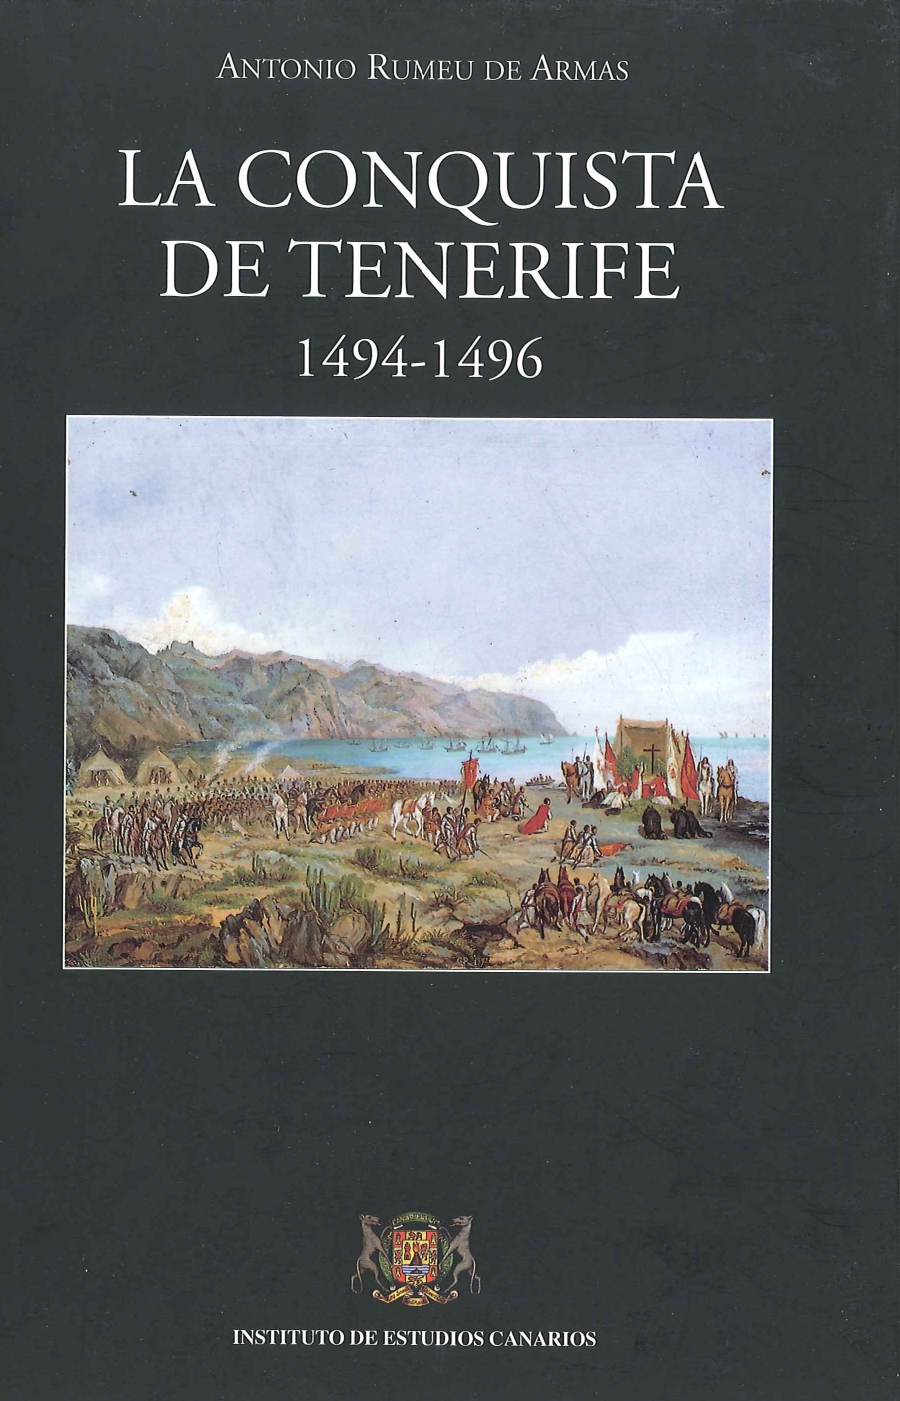 Imagen de portada del libro La conquista de Tenerife